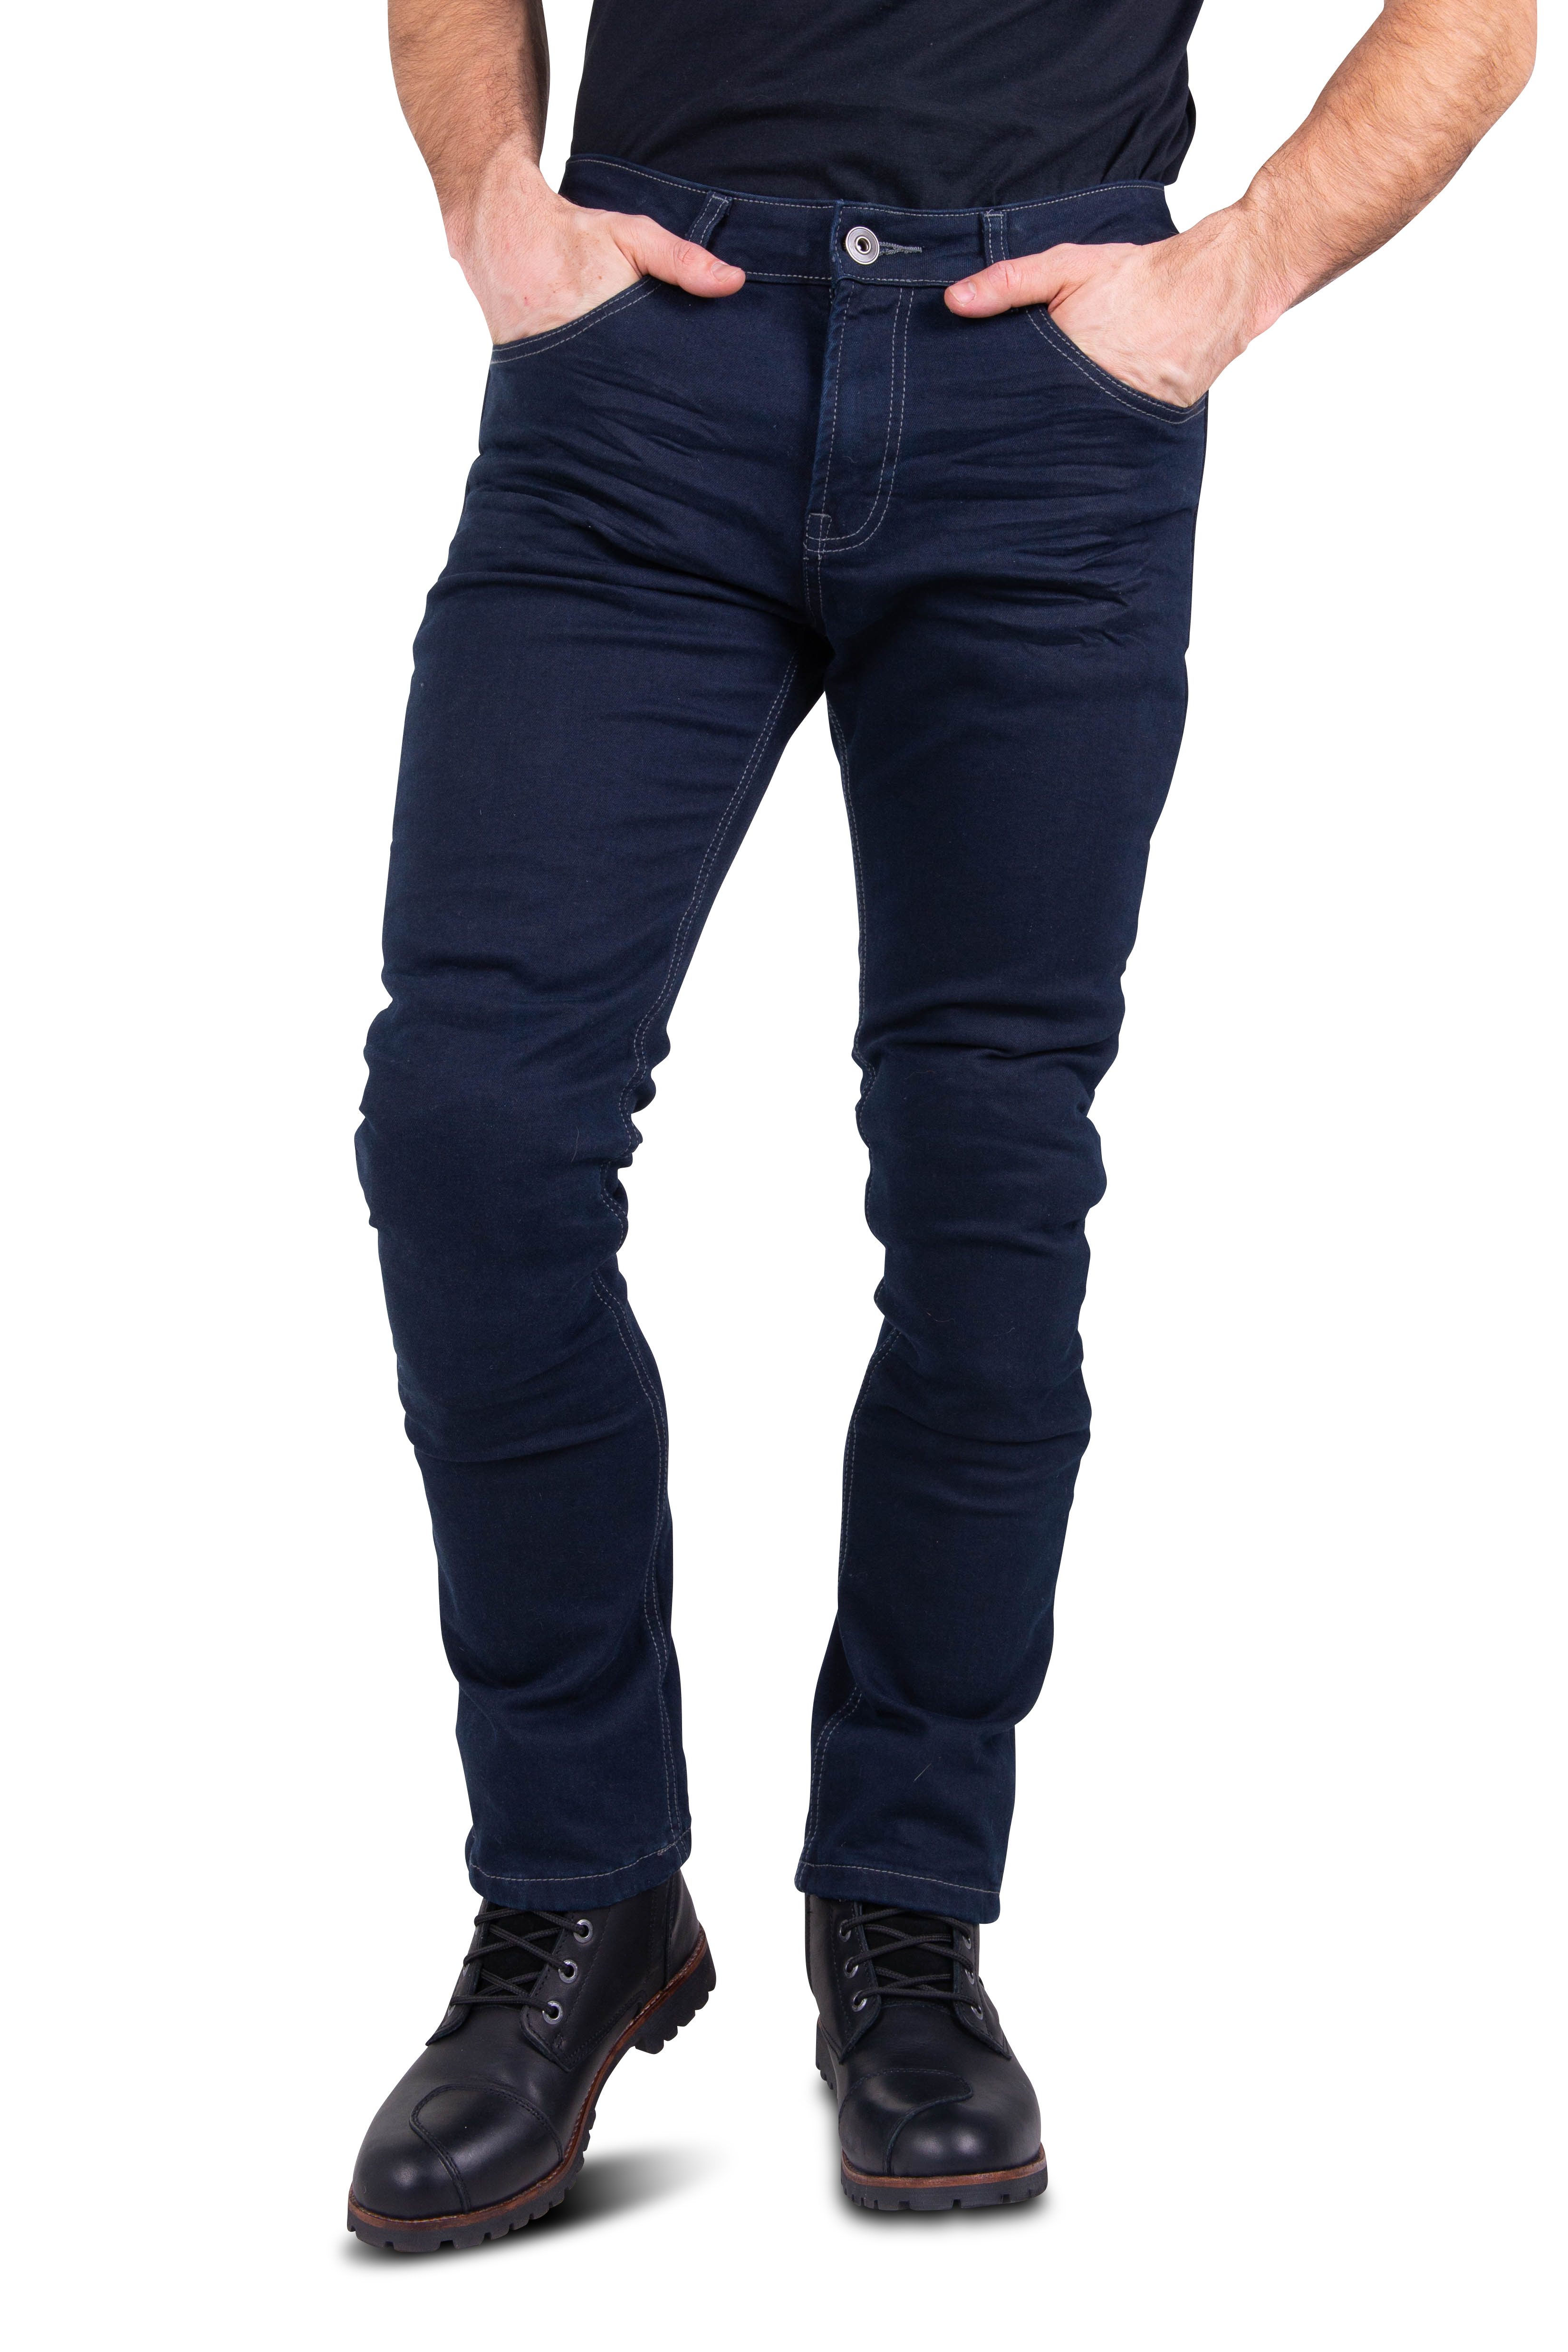 Course Jeans Burnout Slim Fit Rinforzati in Aramide Blu Scuro